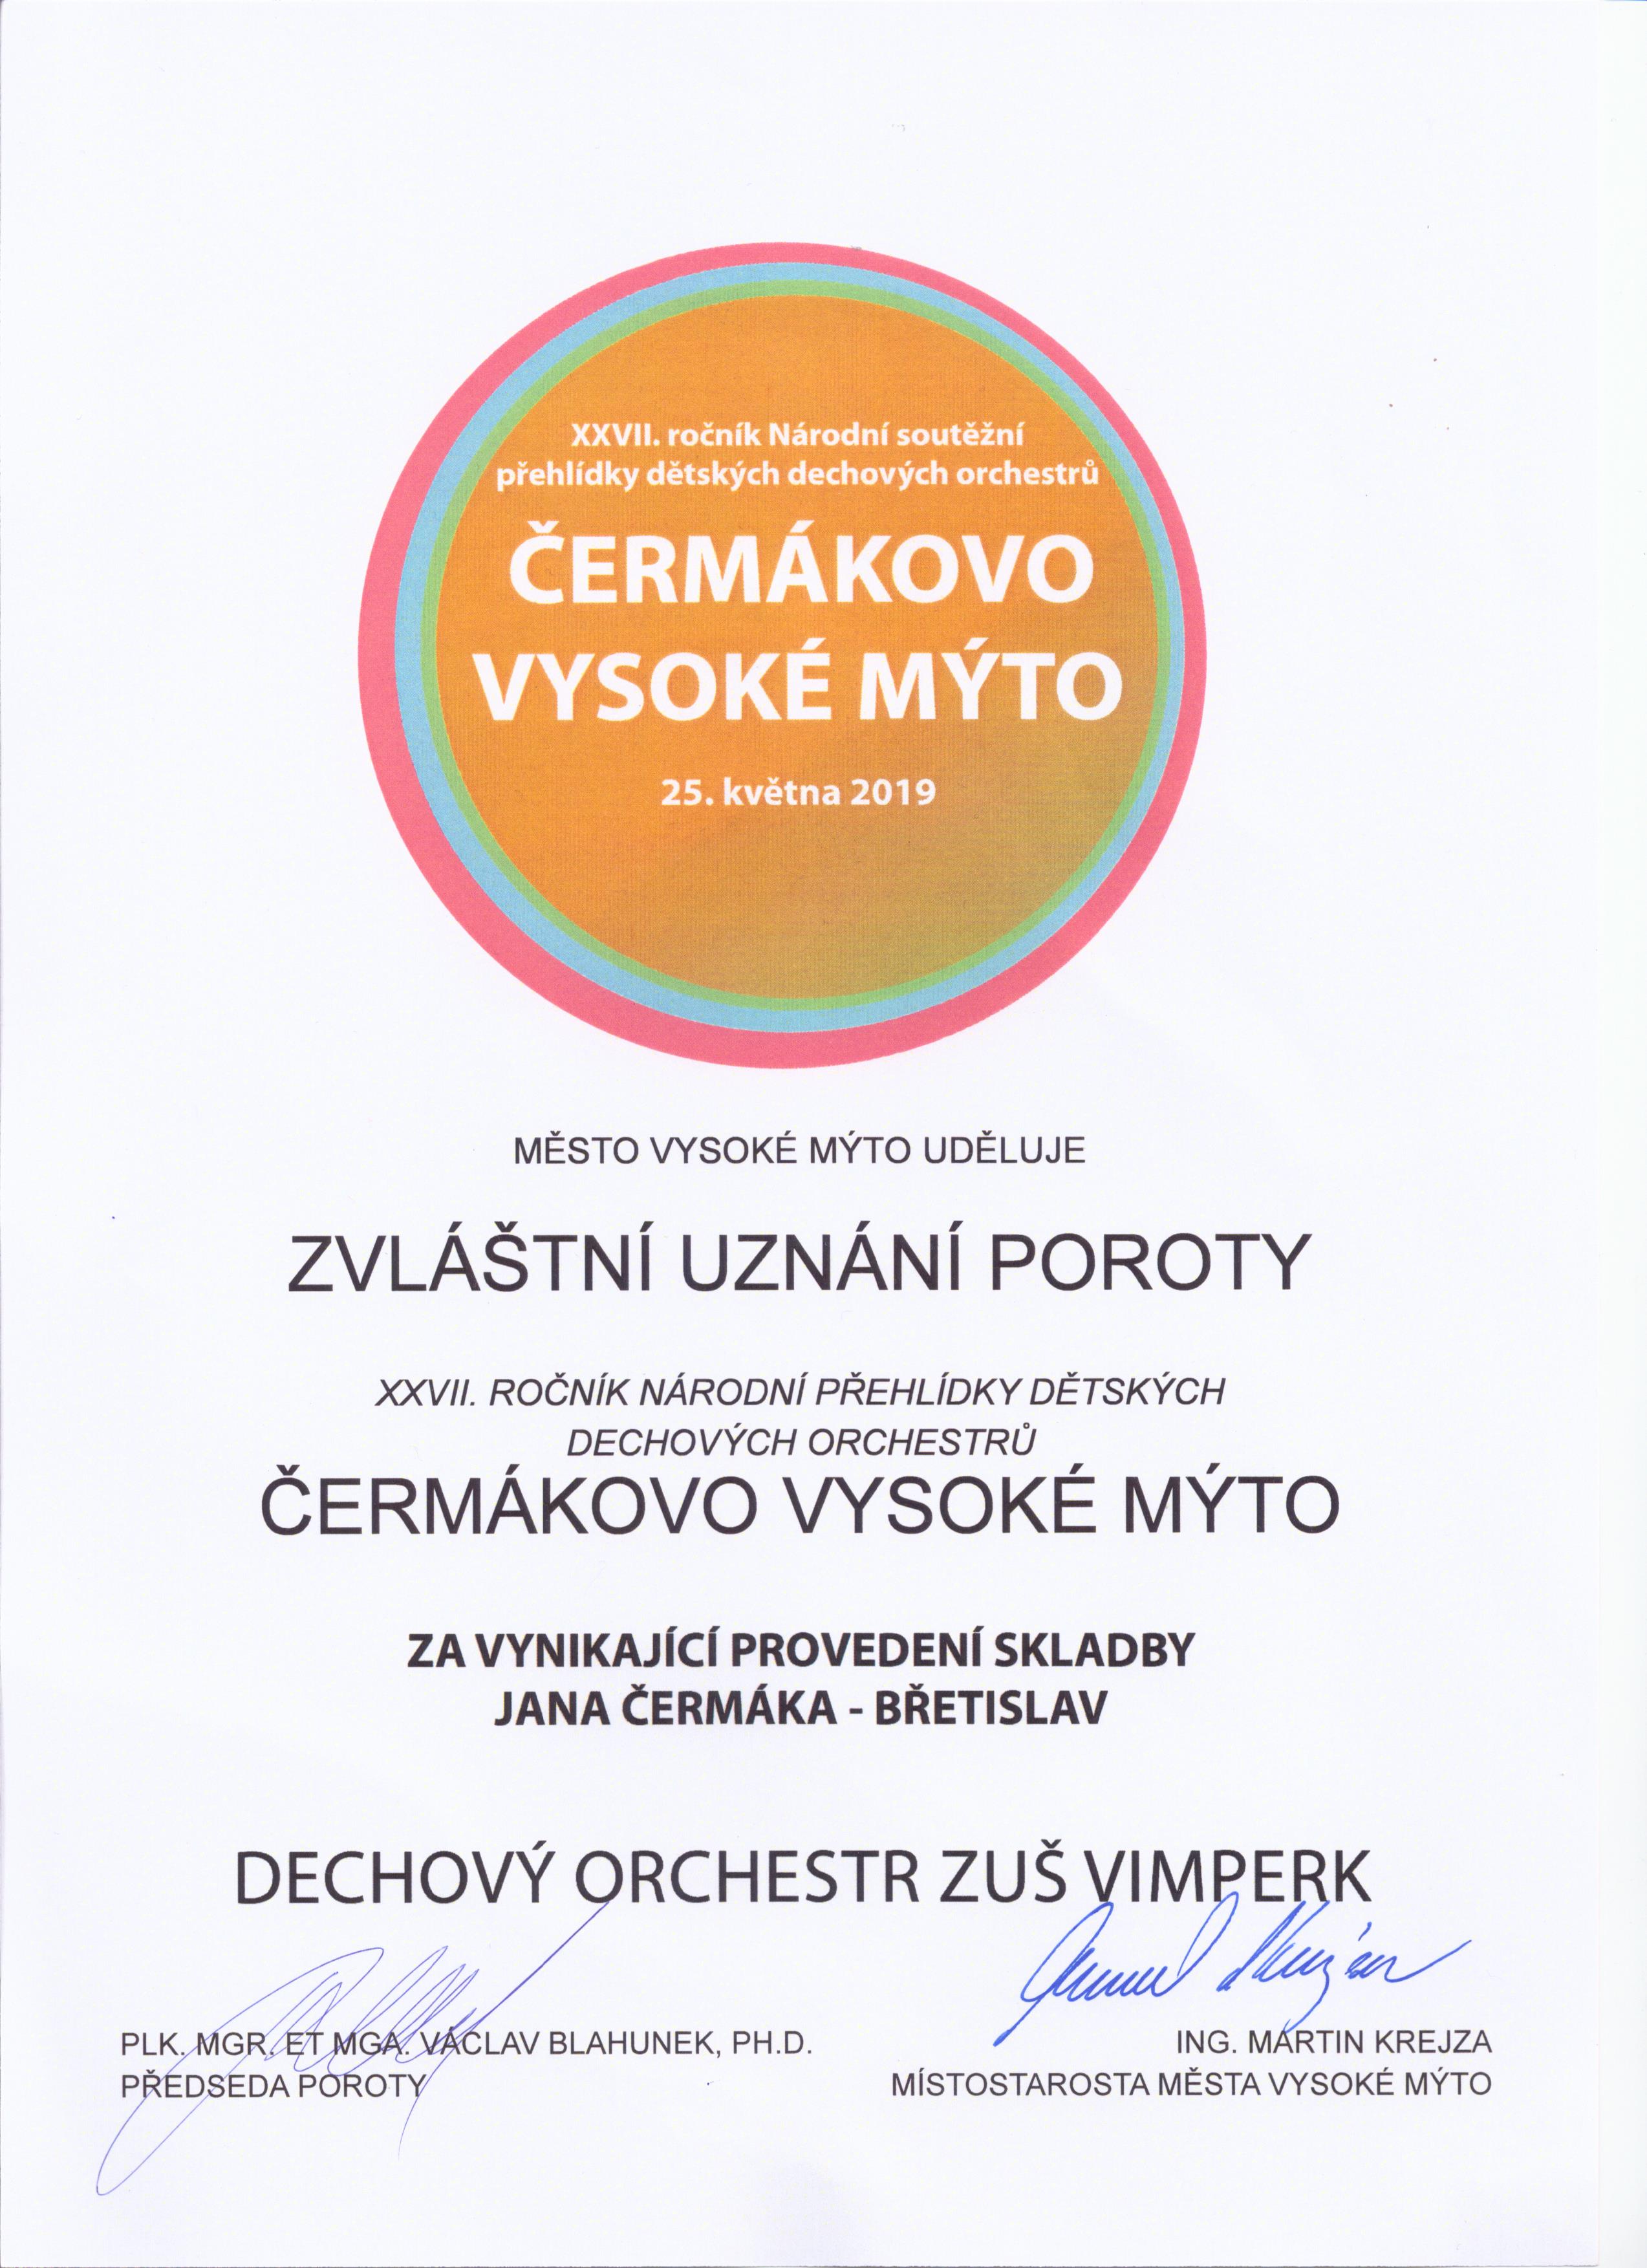 Čermákovo-Vysoké-Mýto-2019-zvláštní-uznání-poroty-za-vynikající-provedení-skladby-Jana-Čermáka-Břetislav